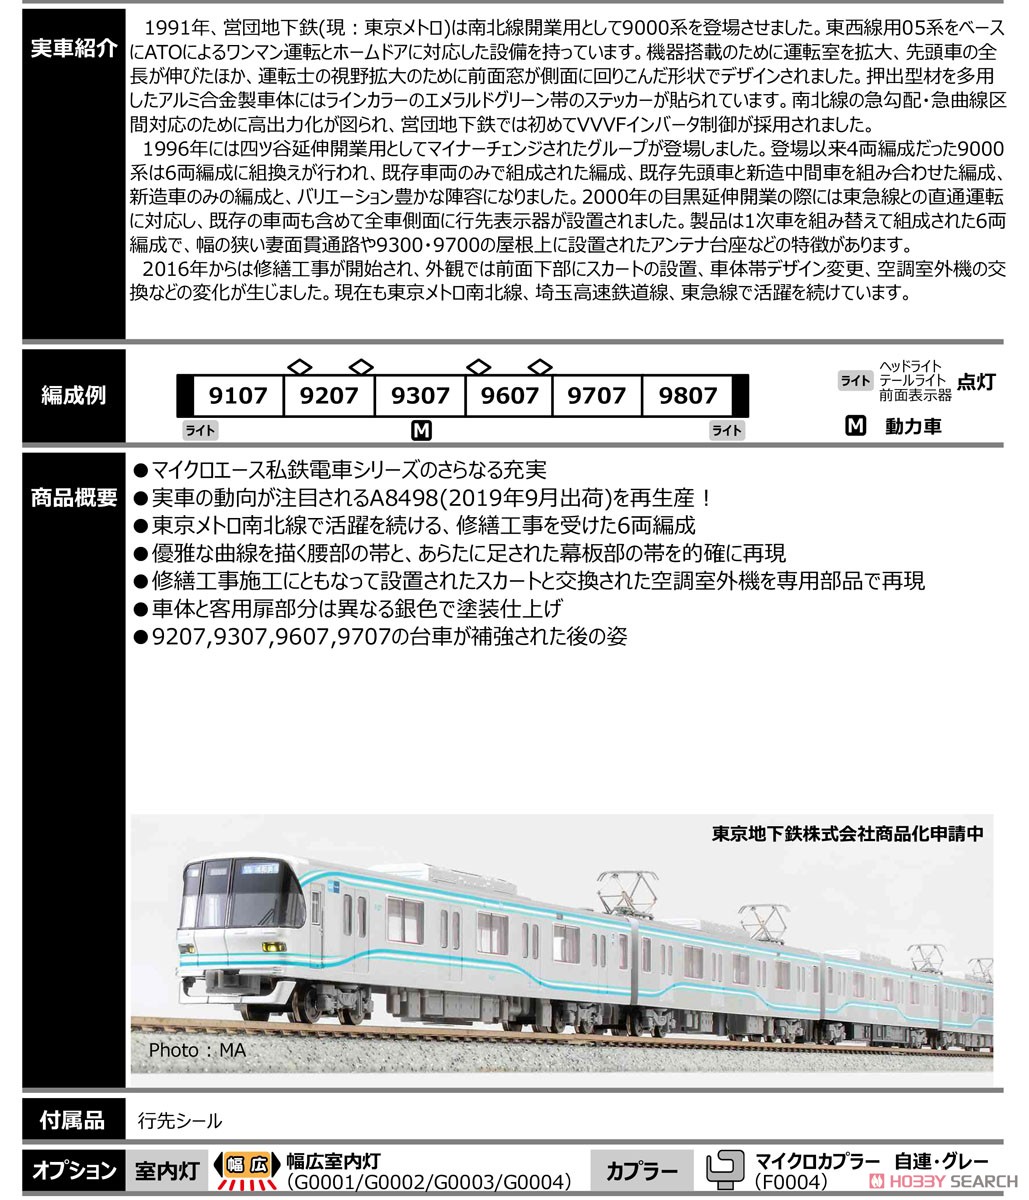 東京メトロ 9000系 リニューアル (6両セット) (鉄道模型) その他の画像2